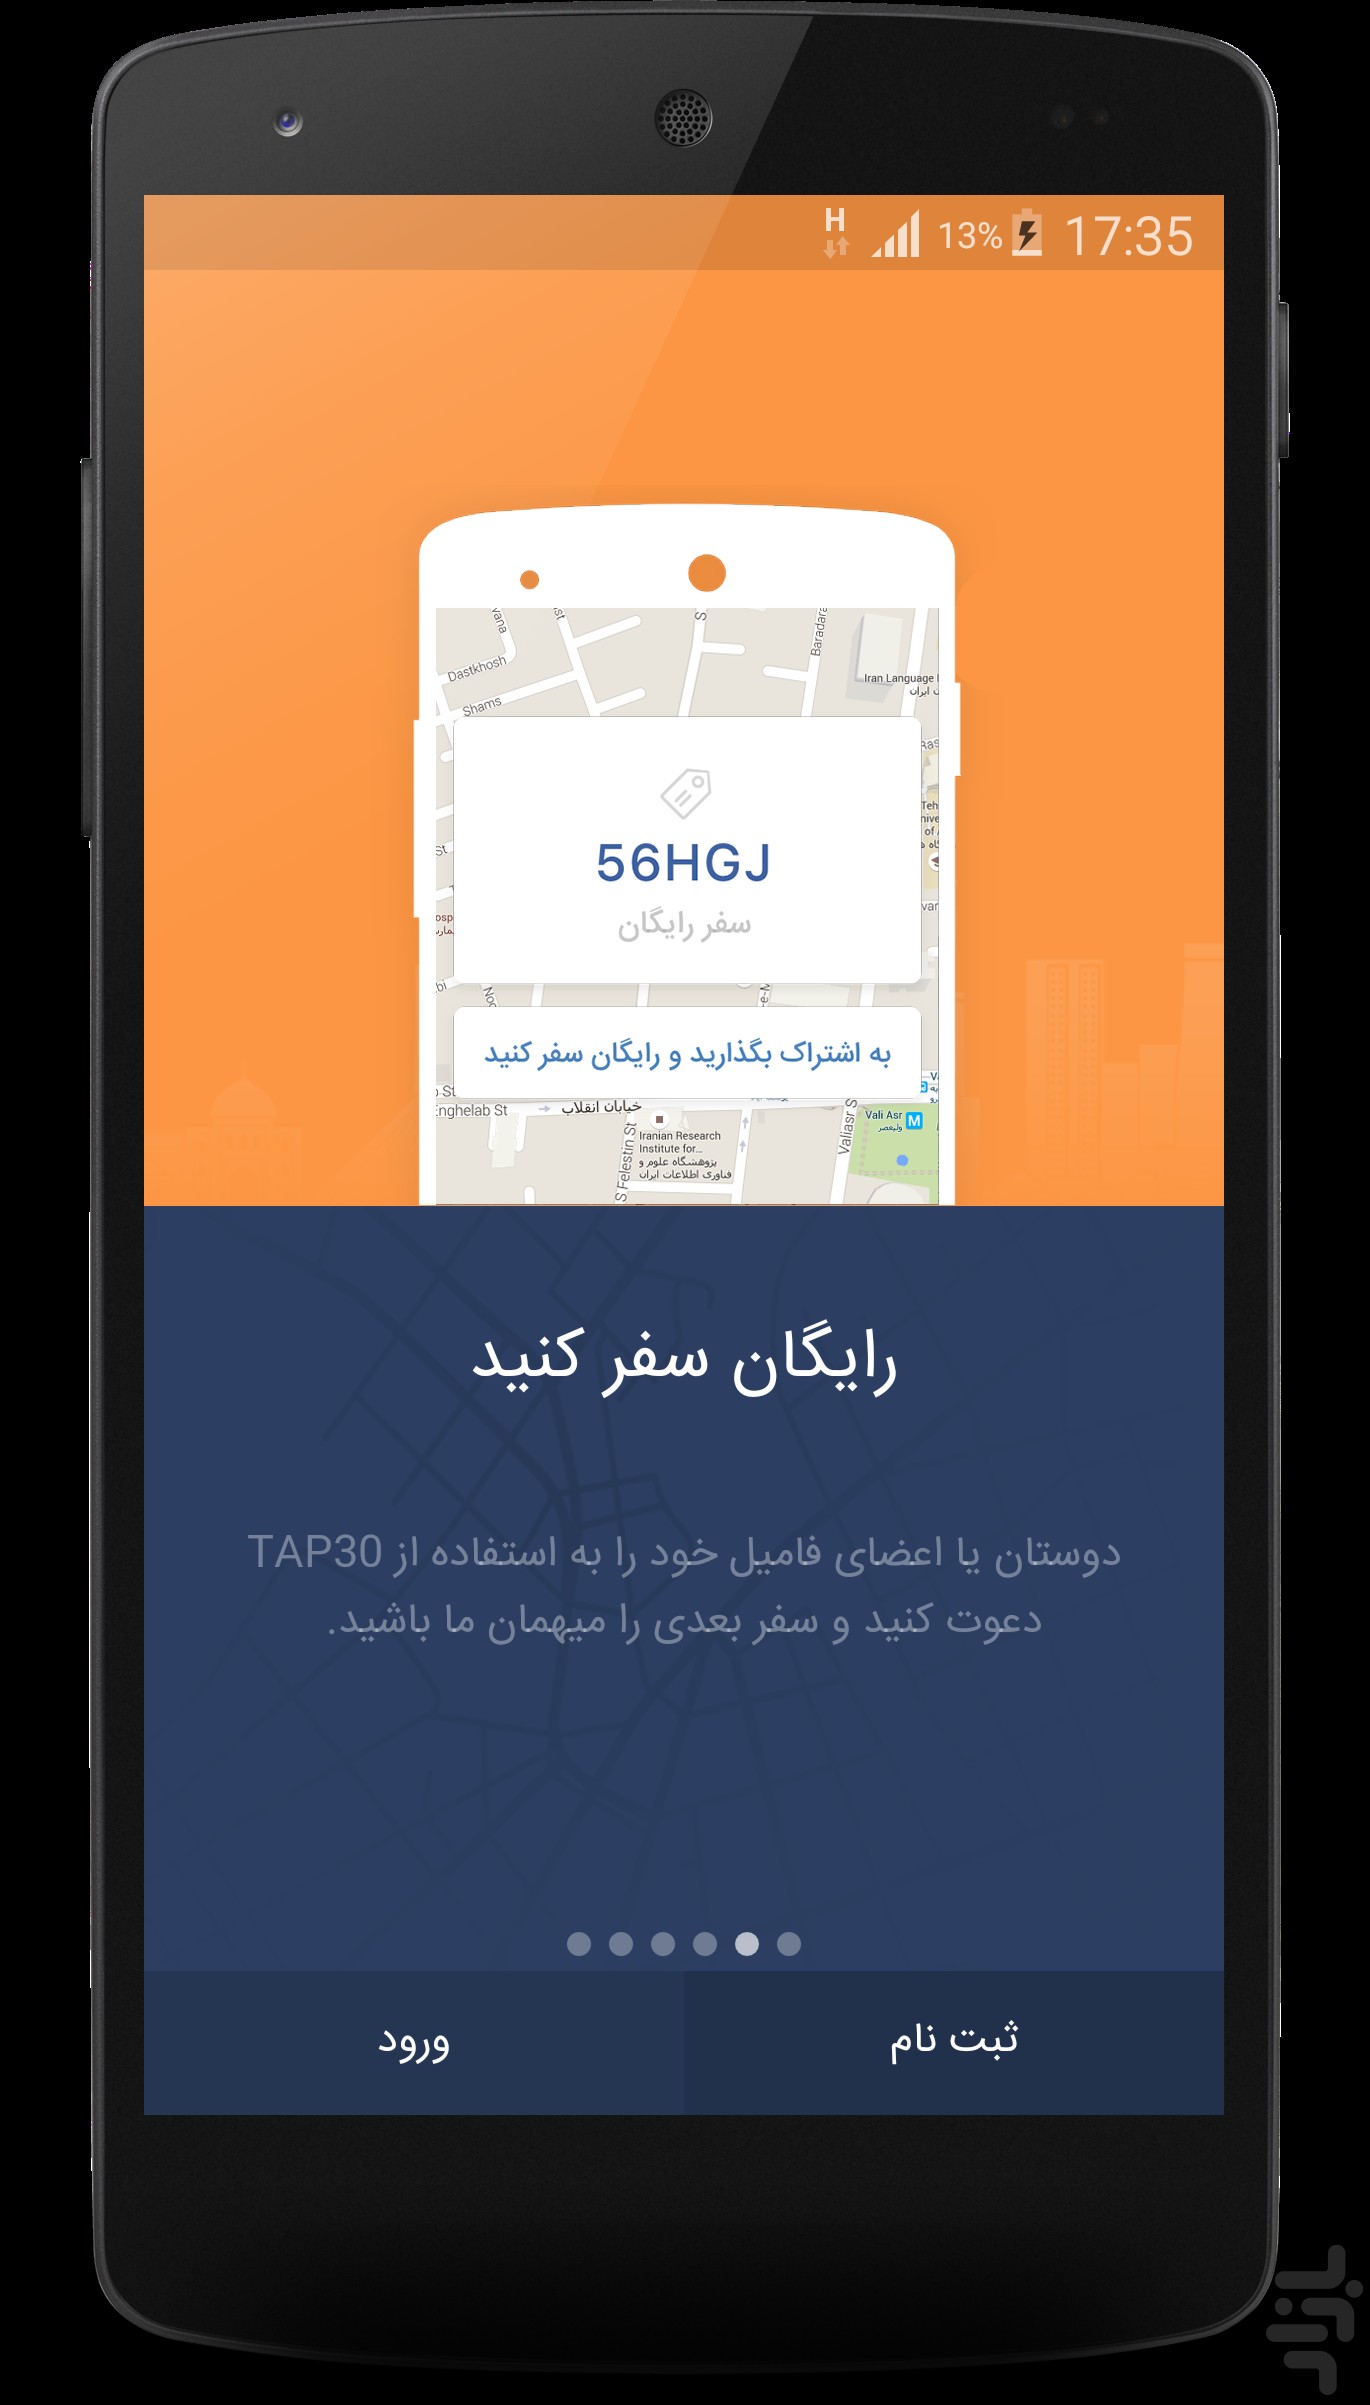 دانلود کنید: با اپلیکیشن TAP30 راحت تاکسی بگیرید و آنلاین کرایه بدهید!